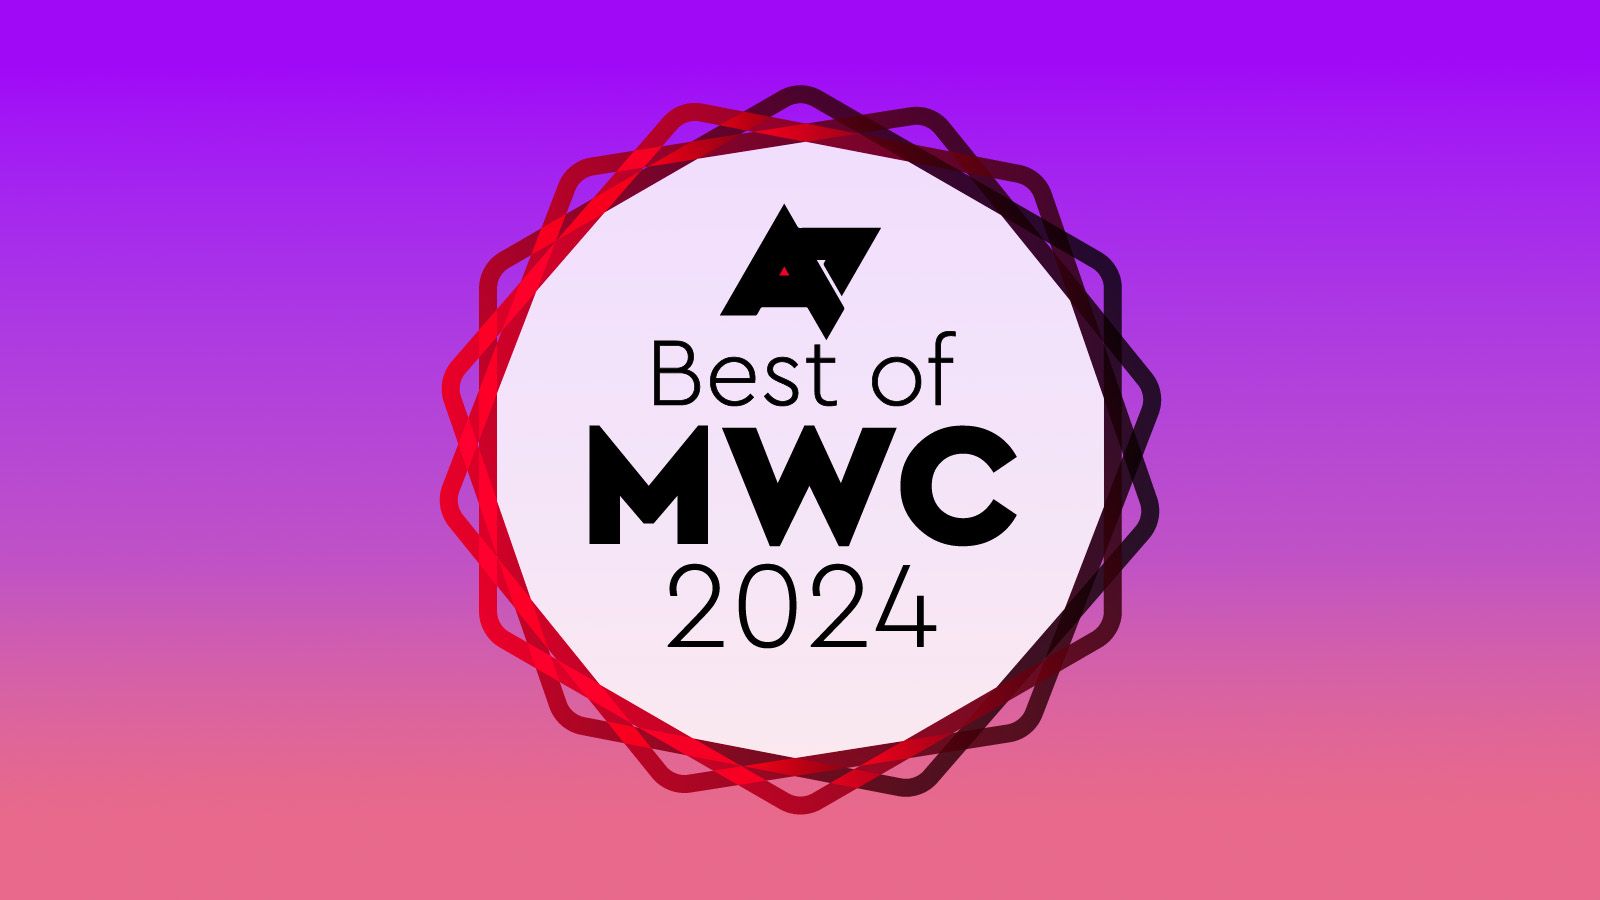 Imagem do prêmio Best of MWC 2024 Android Police com um logotipo na frente de um fundo gradiente rosa-púrpura